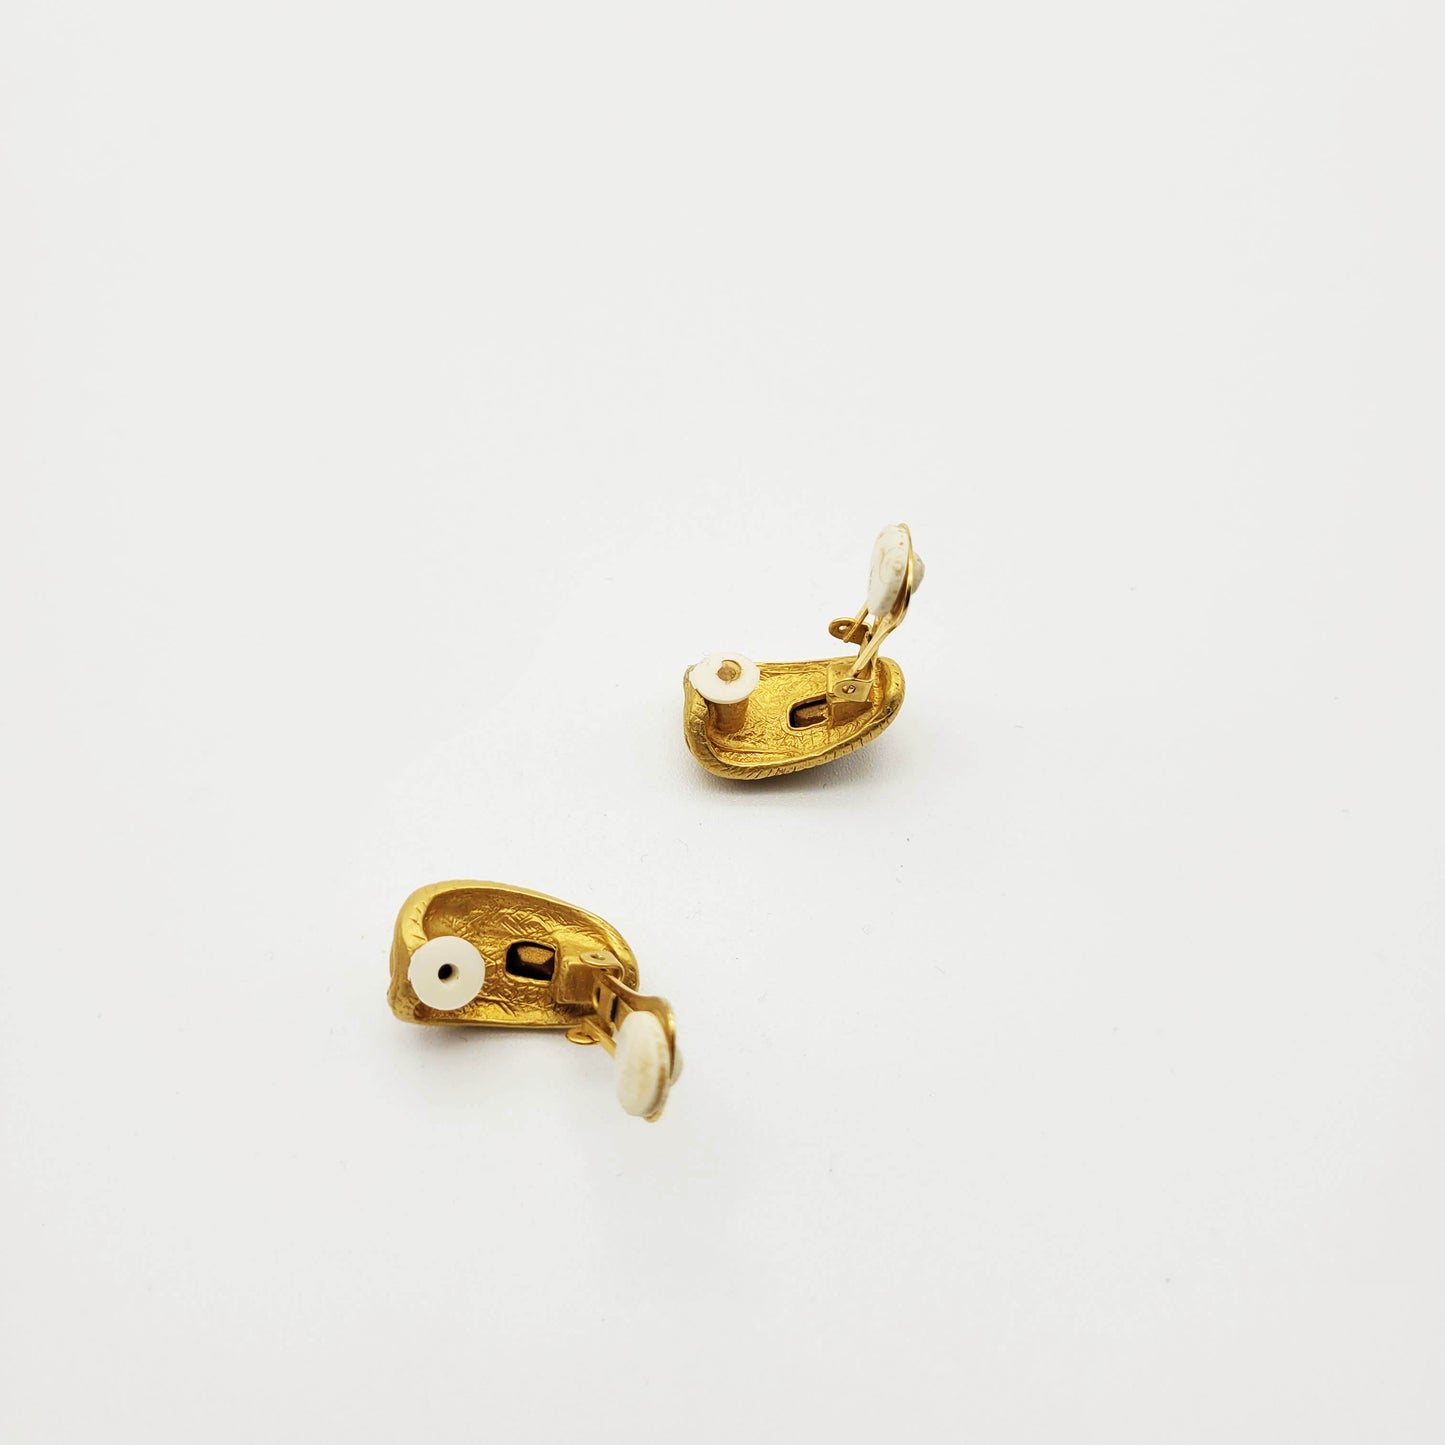 Vintage goldtone clip on earrings